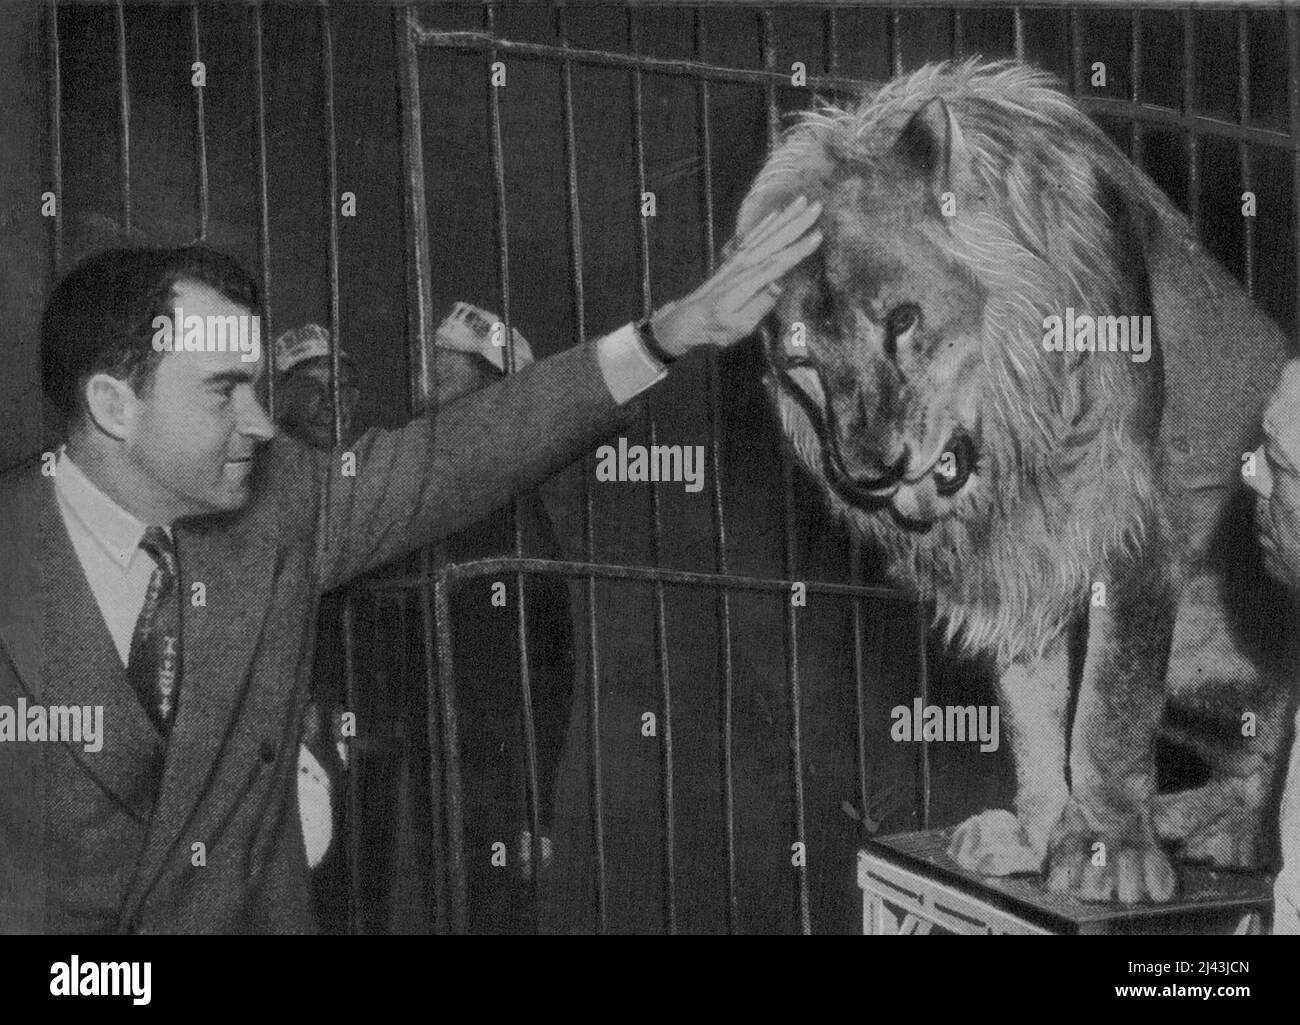 Sheba Sheik, der 18-jährige Filmlöwe, der mit Tarzan aufgetreten ist und versucht, sich grausam zu verhalten, wird endlich mit vorsichtiger Streicheleinheit beschenkt. Nixon ist eher daran gewöhnt, politische Löwengruben zu betreten, und wird von Fotografen angemahnt, während einer Zirkusparty einen vorsichtigen, armseligen Kumpel gegen den nicht ansprechbaren Filmstar Sheba Sheik auszusprechen. 07. Oktober 1953. Stockfoto